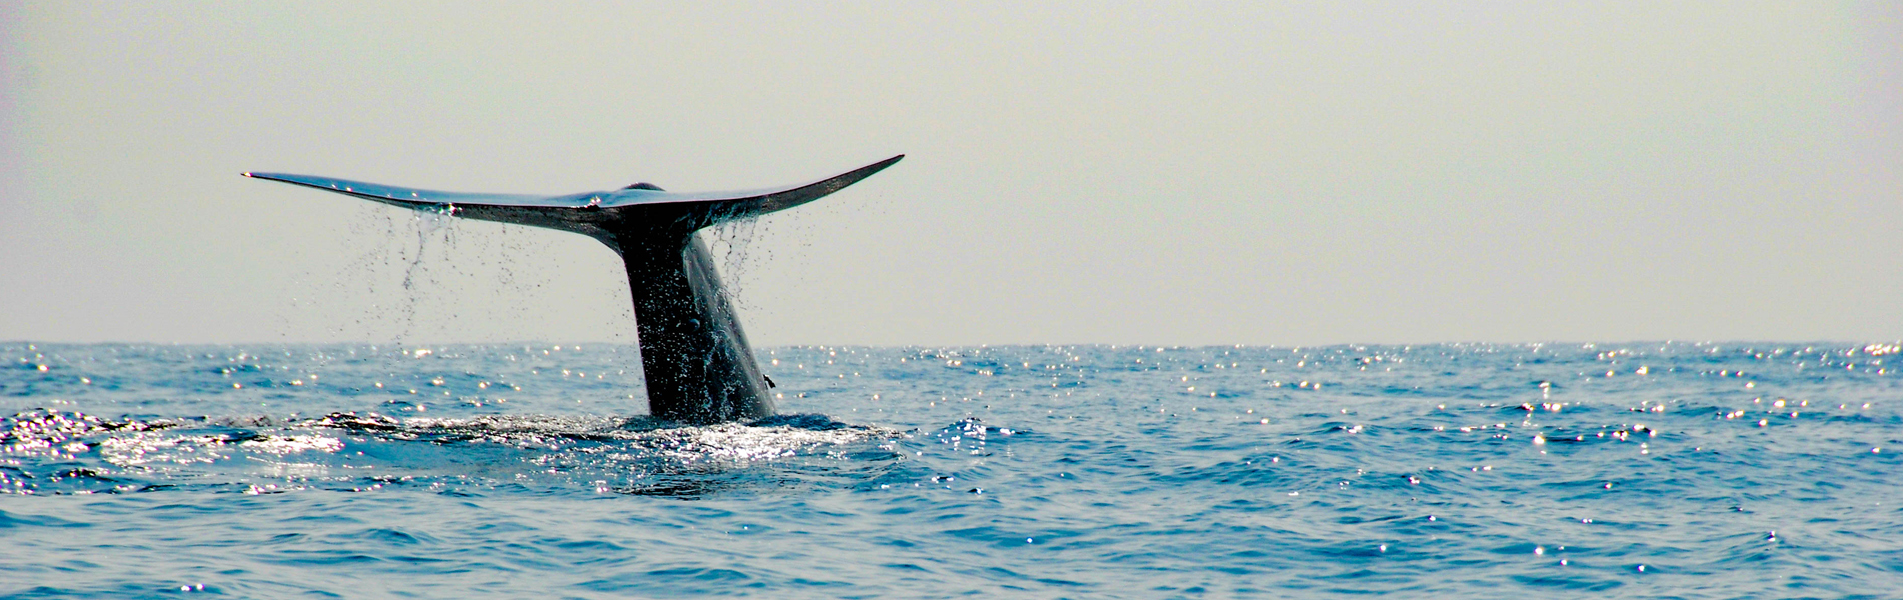 whale watching at mirissa Sri Lanka